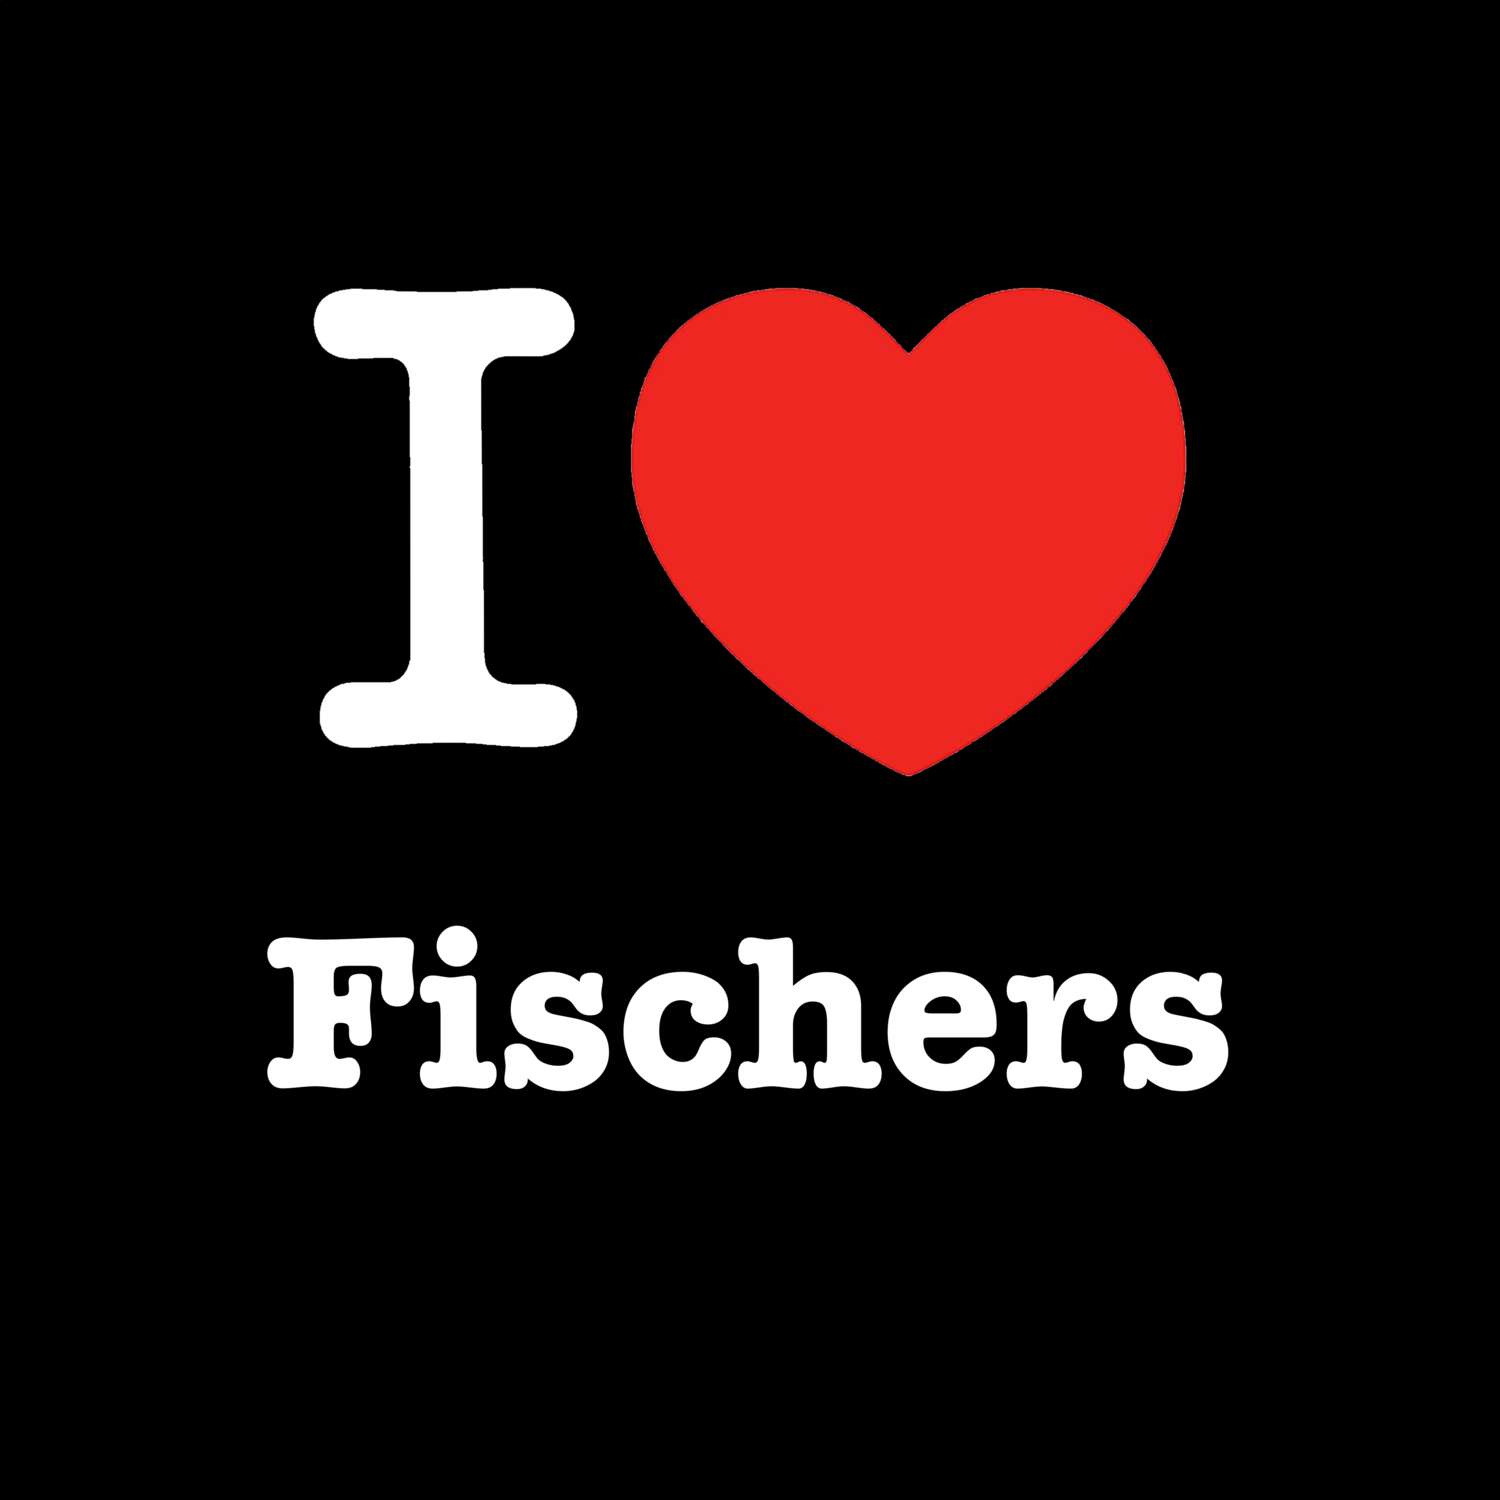 Fischers T-Shirt »I love«